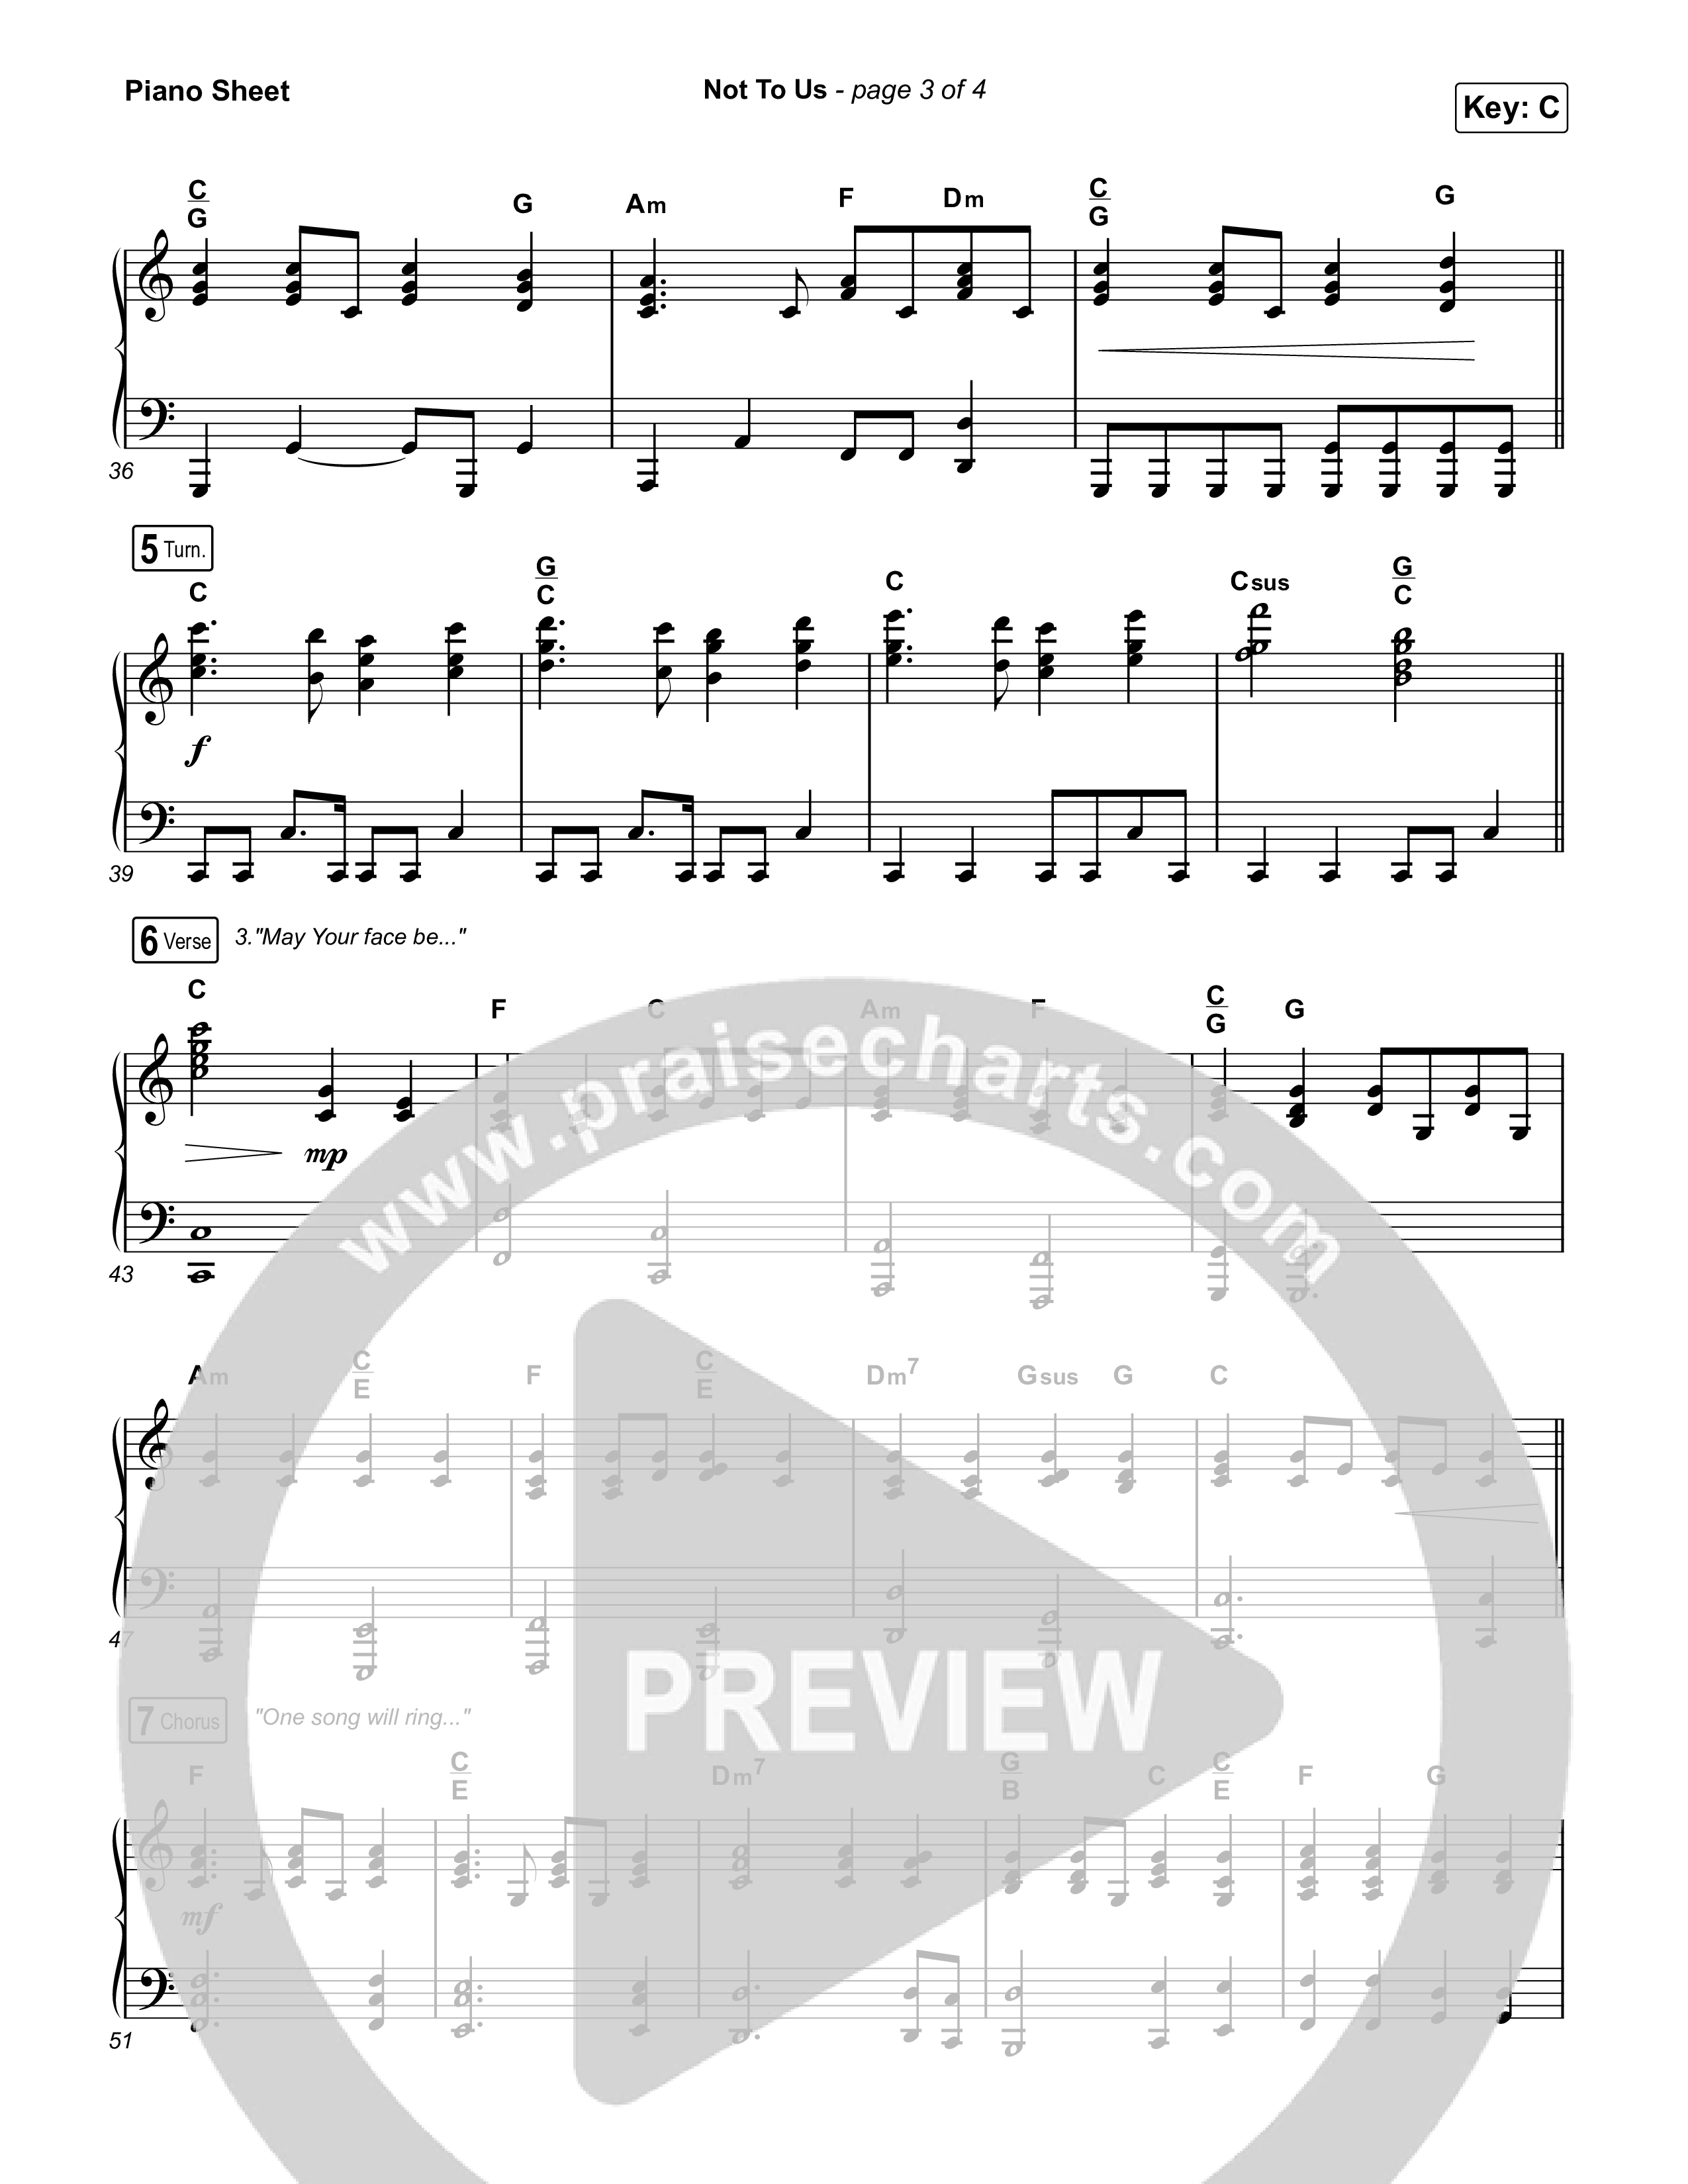 Not to Us (One Name Forever Shall Be Praised) Piano Sheet (Matt Papa / Matt Boswell / Matt Redman)